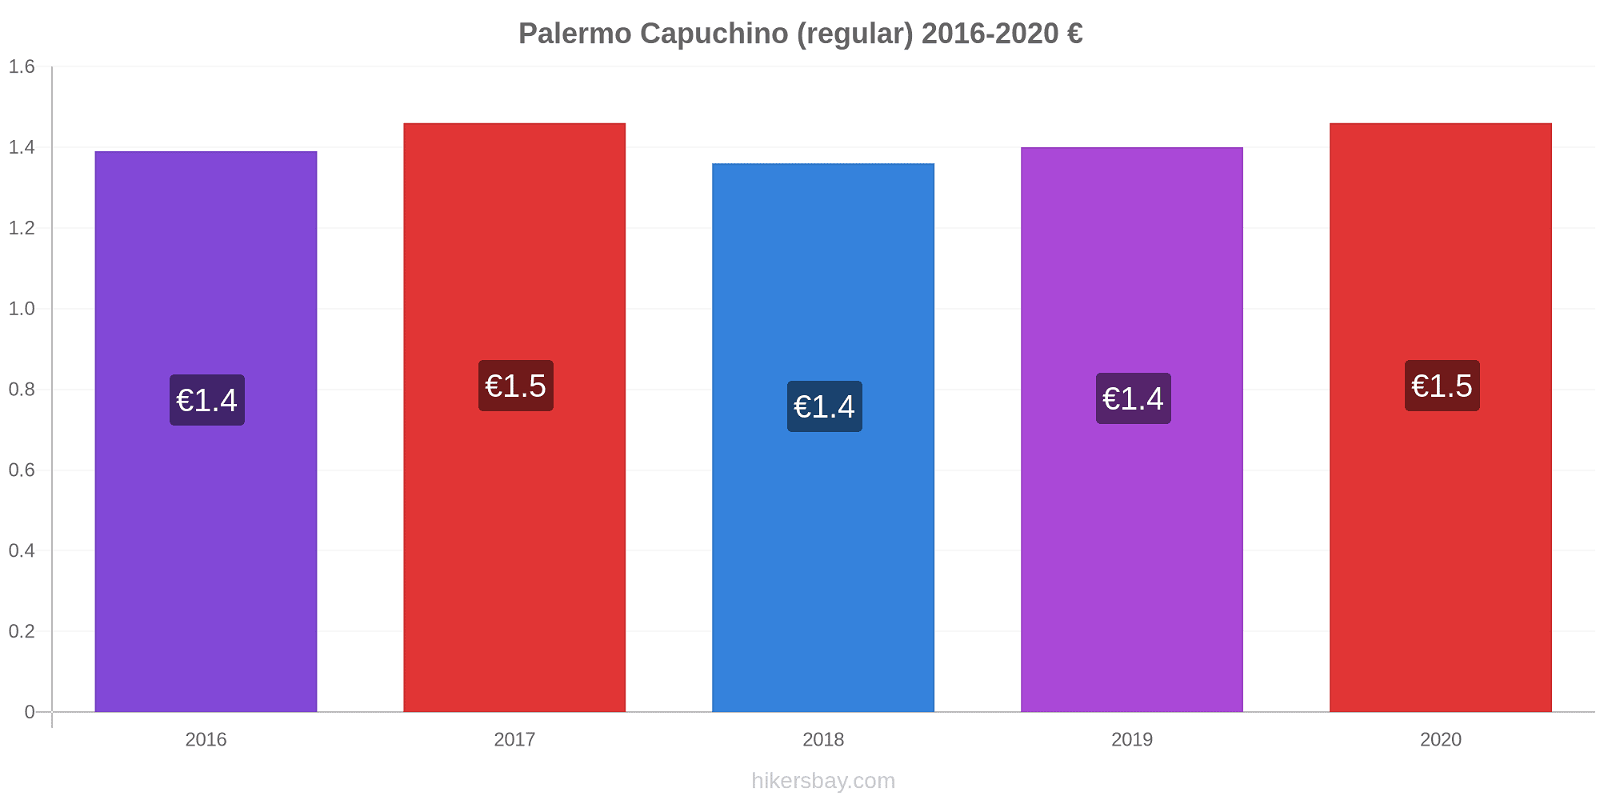 Palermo cambios de precios Capuchino (regular) hikersbay.com